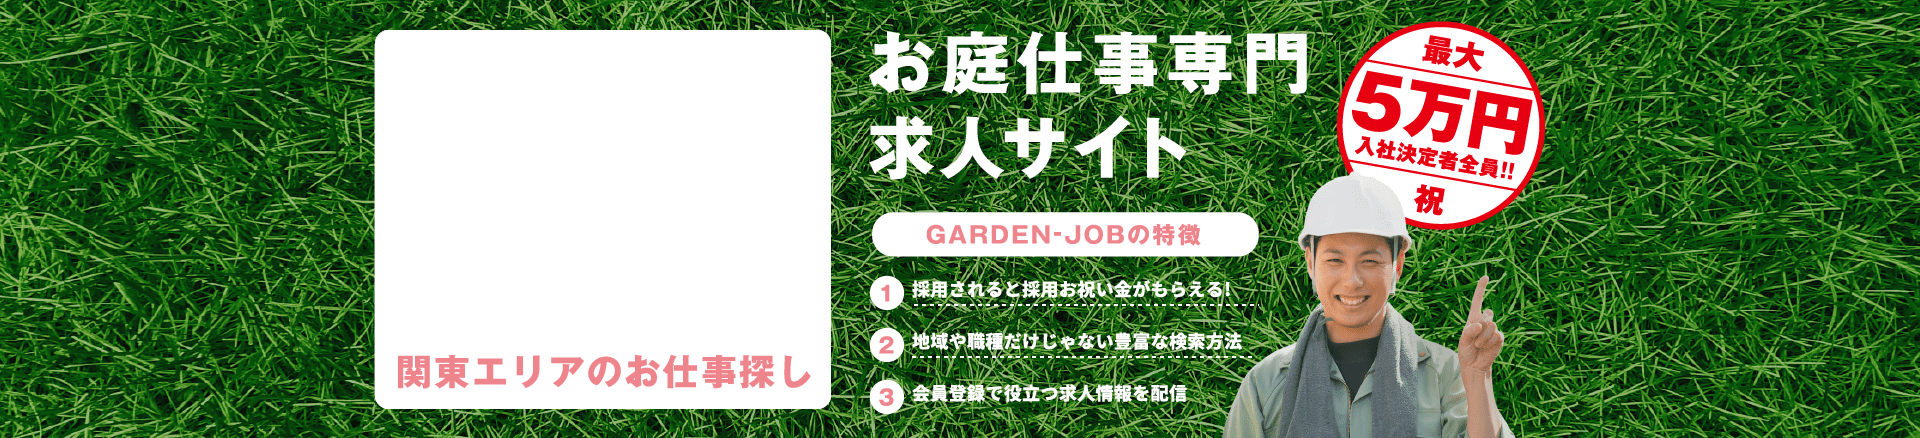 お庭仕事専門求人サイト「GARDEN-JOB」関東版